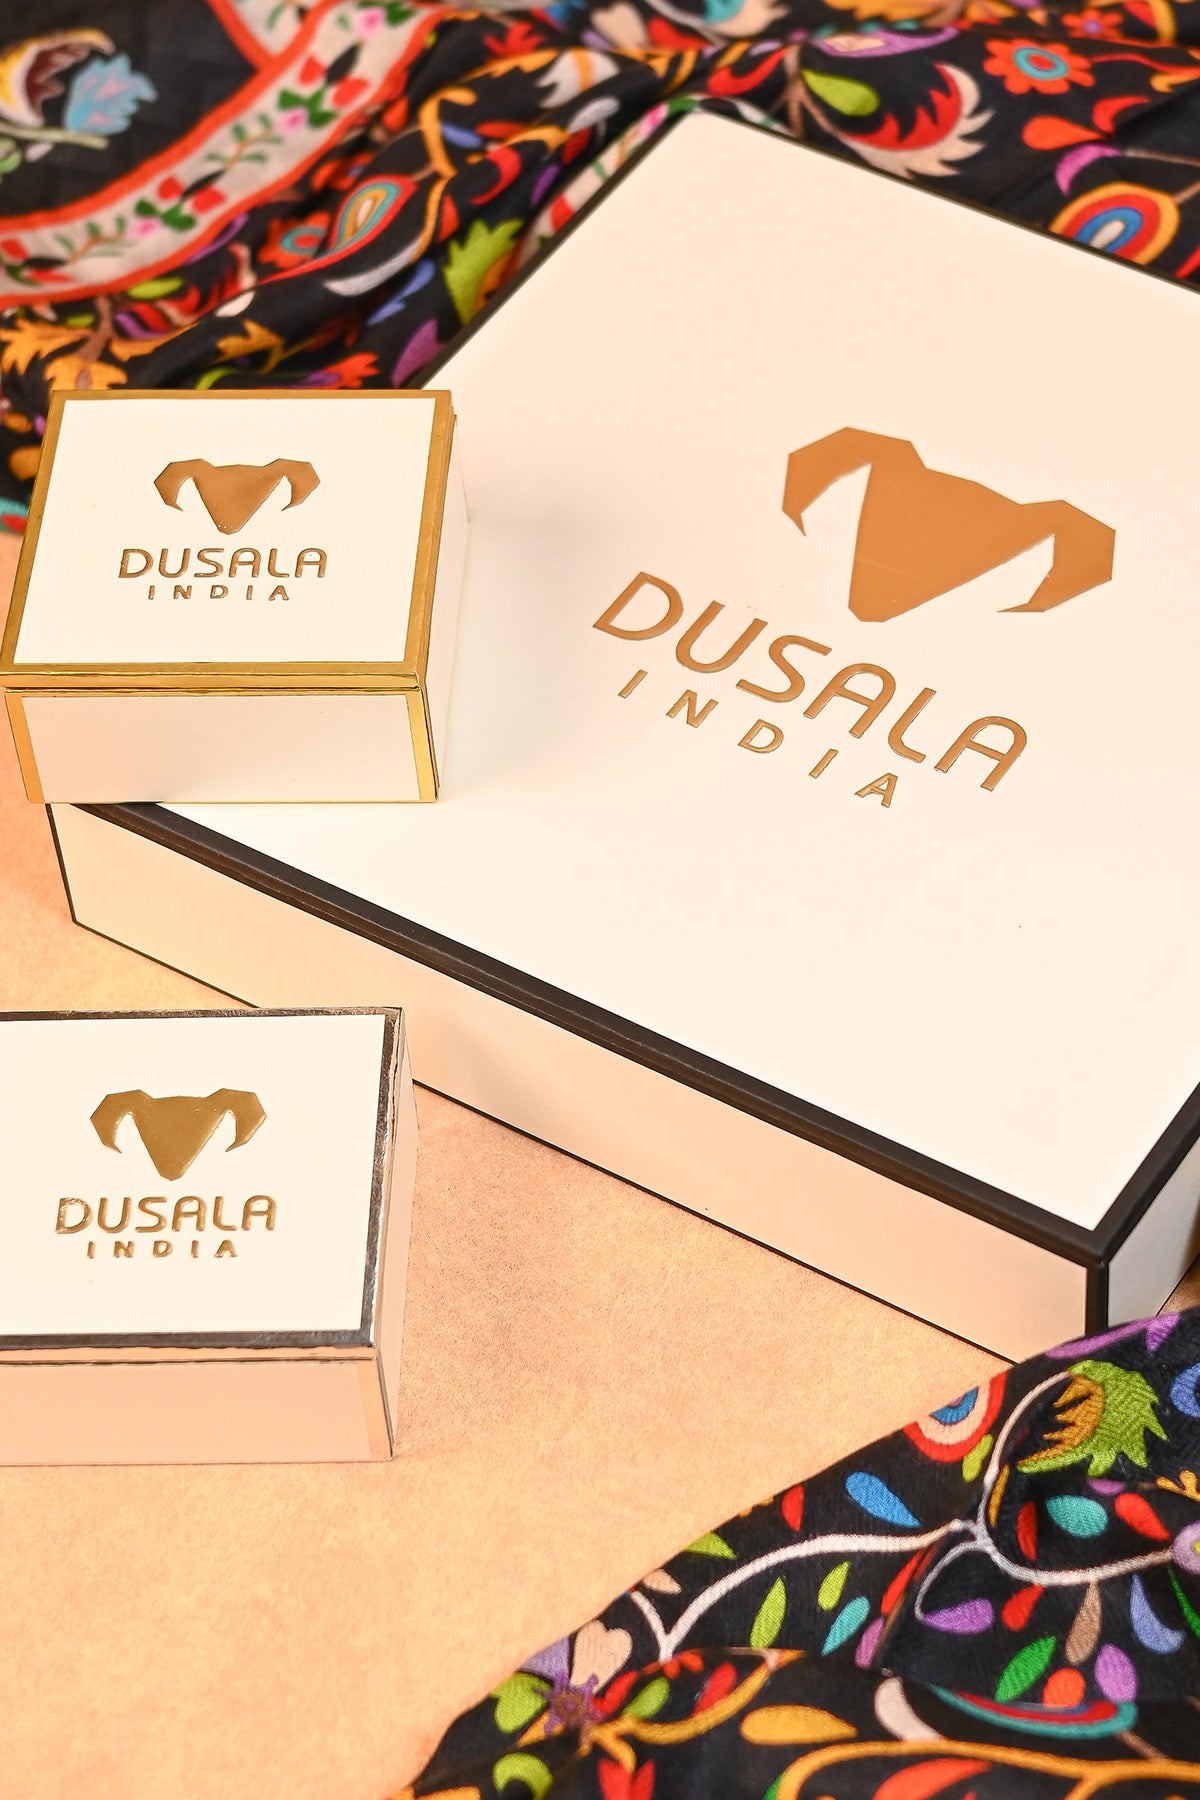 Dusala Packaging